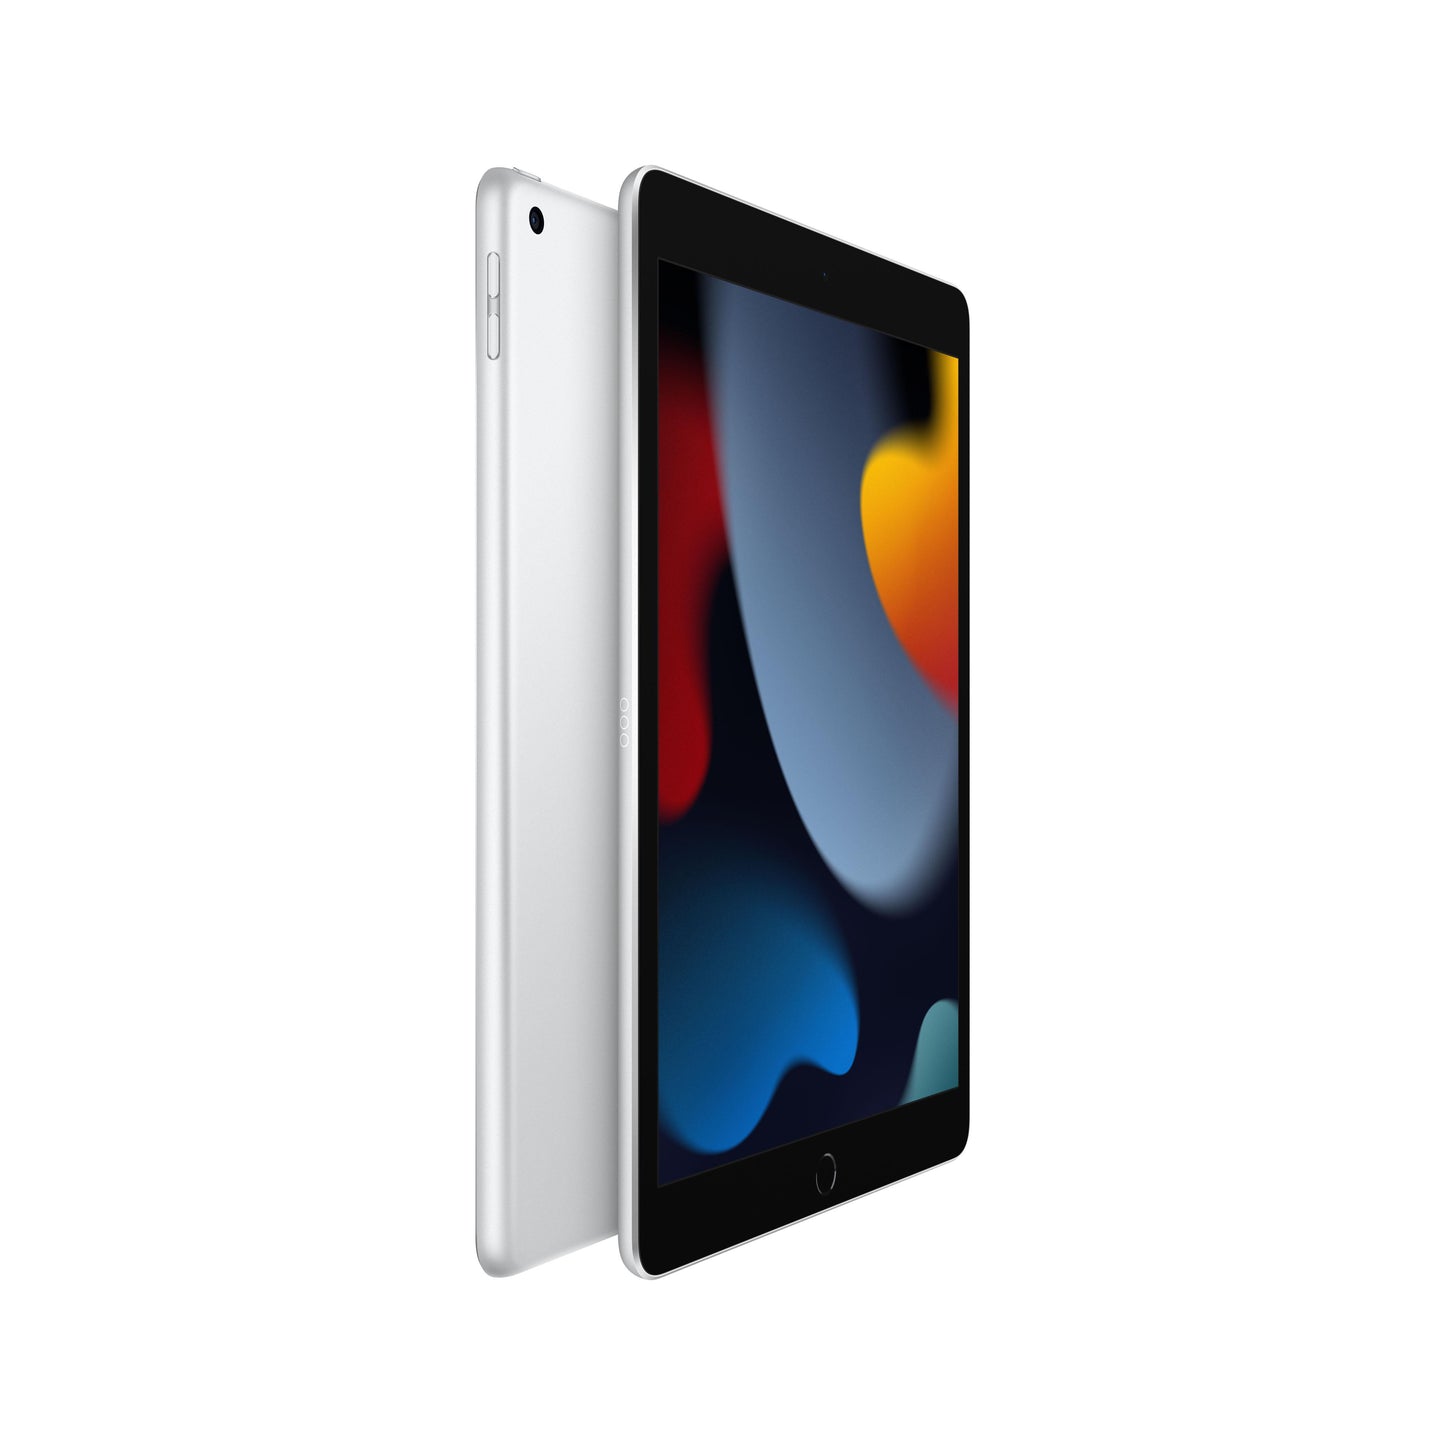 2021 10.2-inch iPad Wi-Fi 64GB - Silver (9th generation)